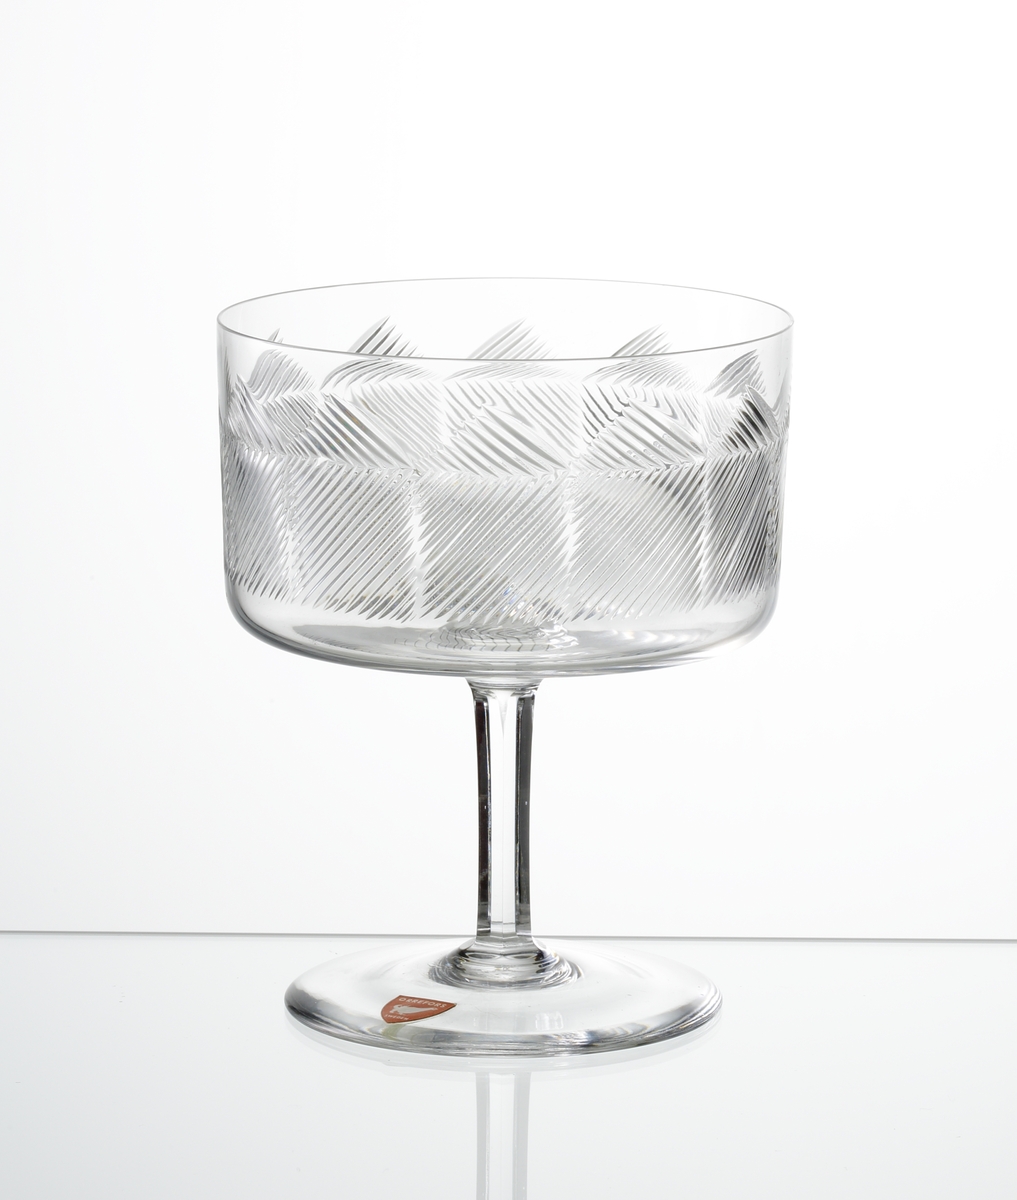 Design: Ingeborg Lundin.
Champagneskål, cylindrisk kupa med skärslipade diagonala linjer som skapar ett
geometriskt mönster. Fasettslipat ben och slät fot.